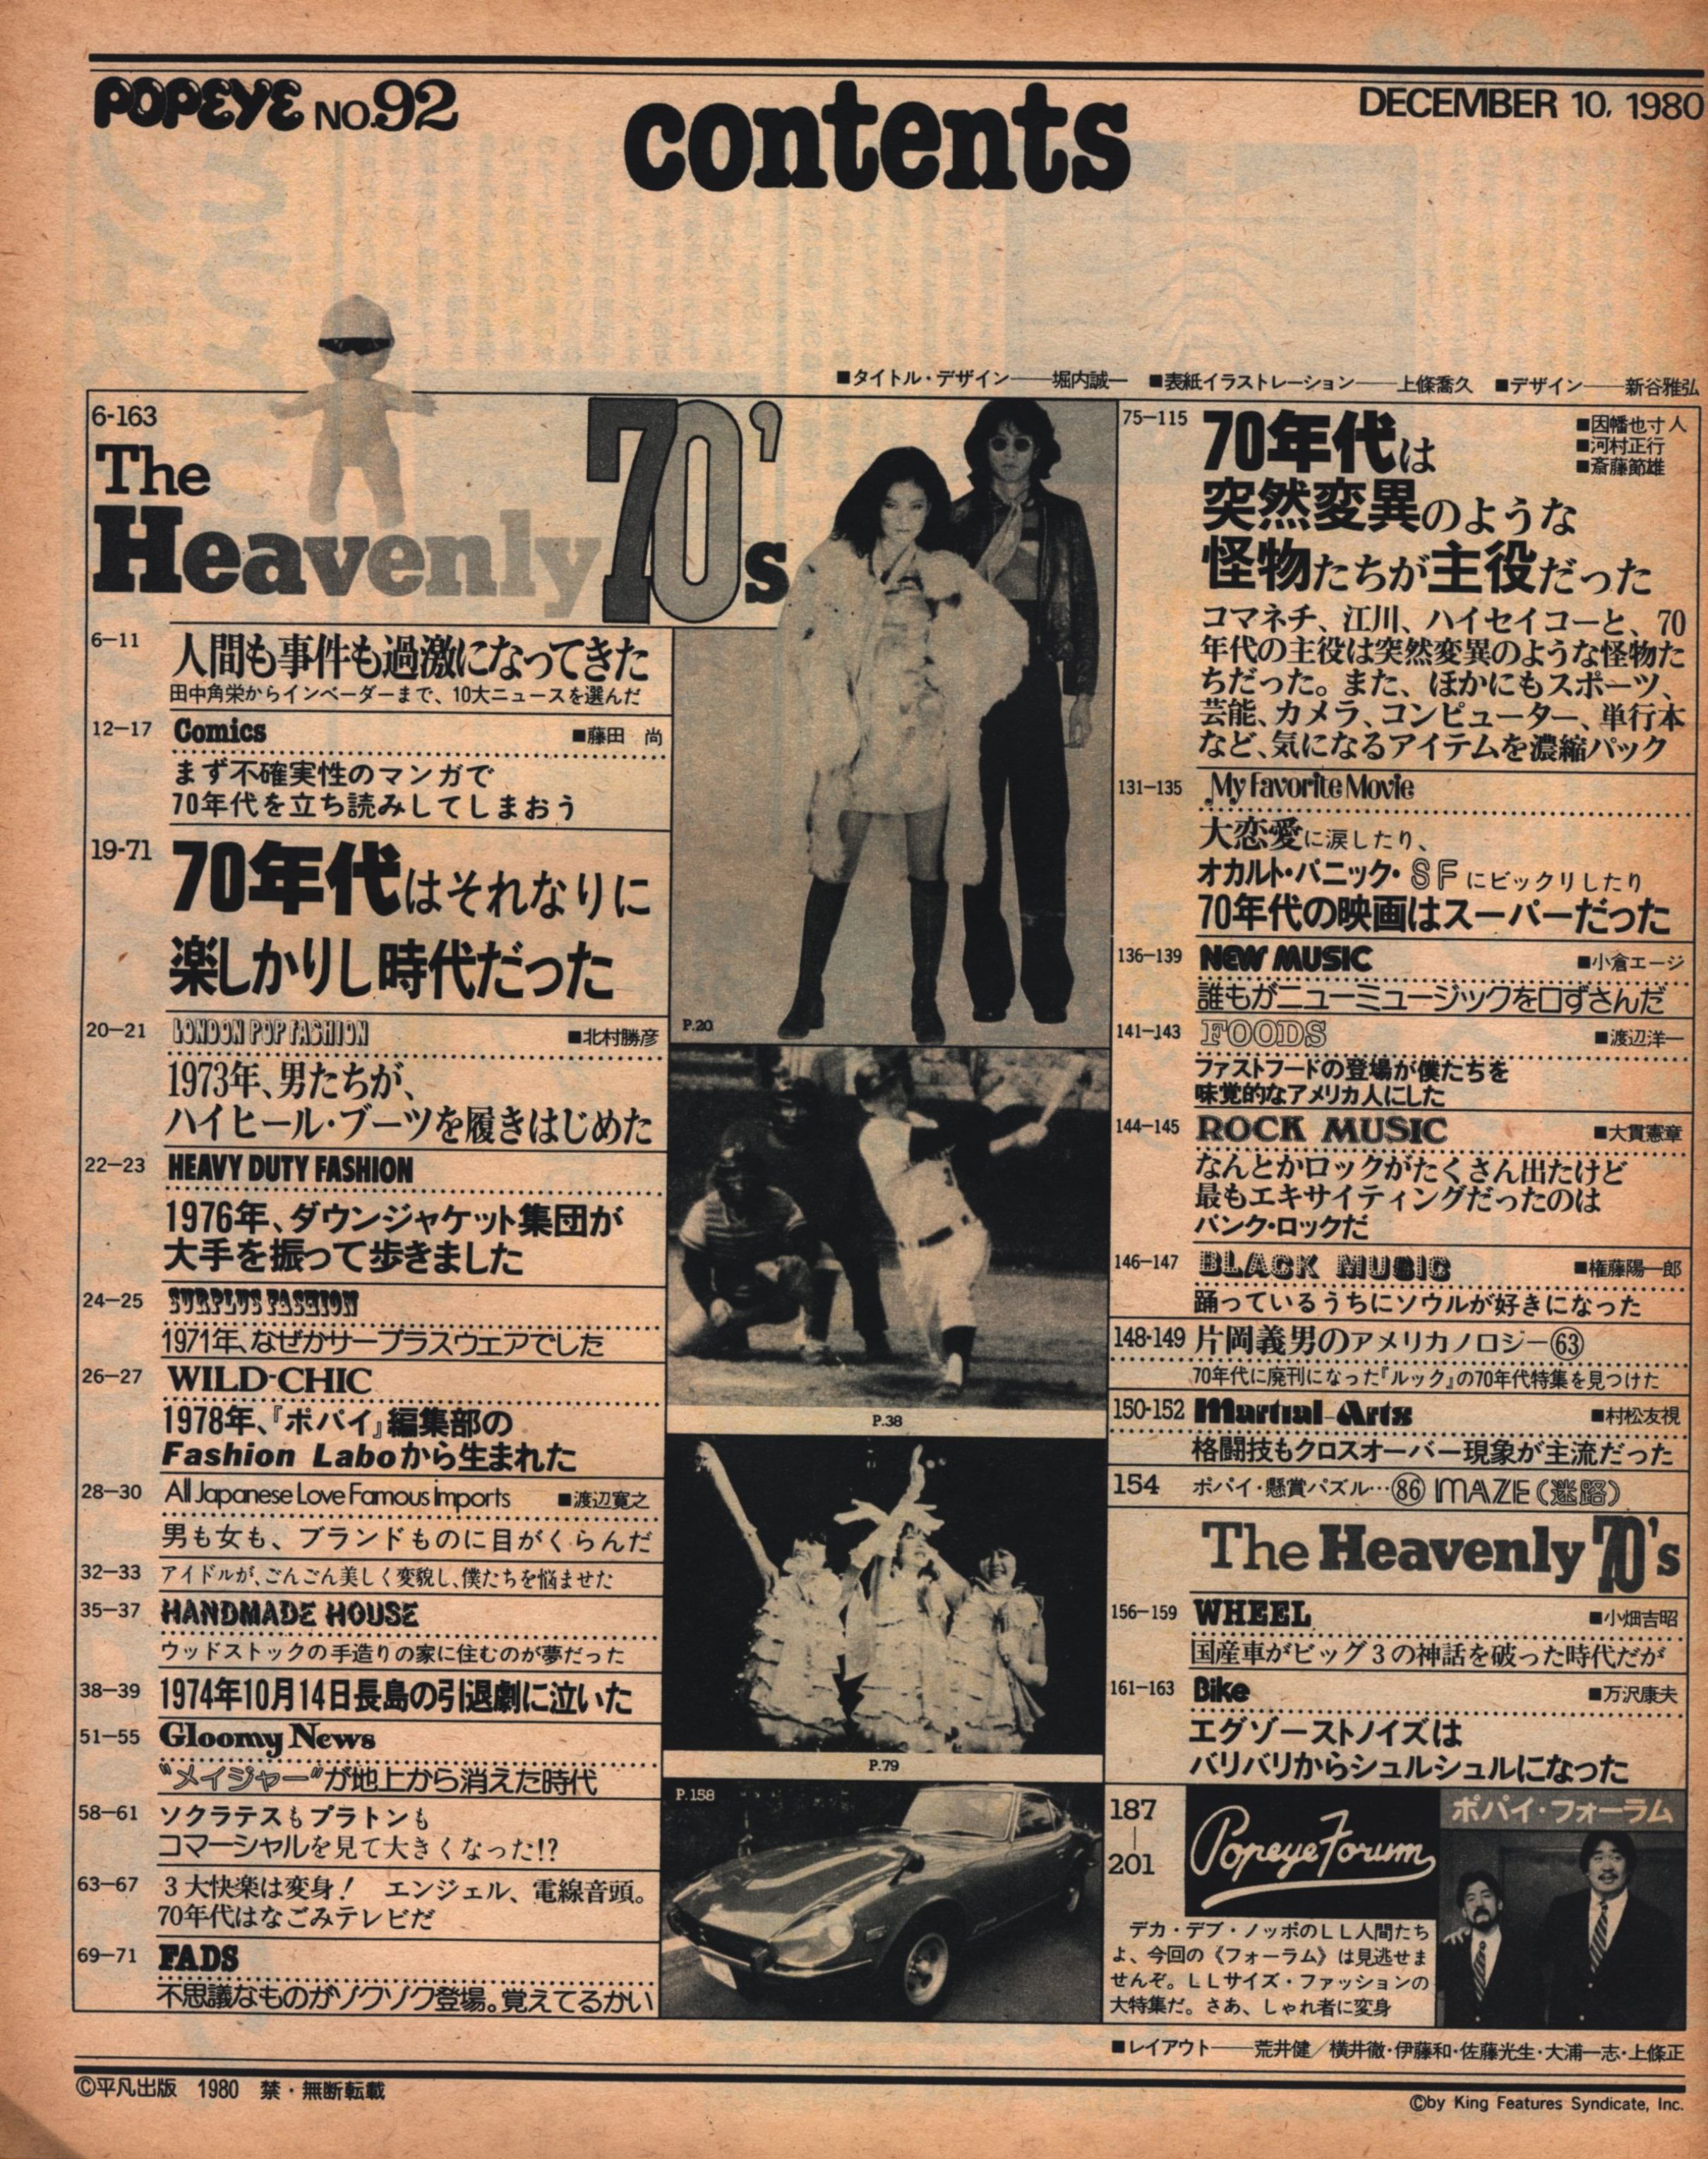 1978年 増刊1号 popeye - 雑誌